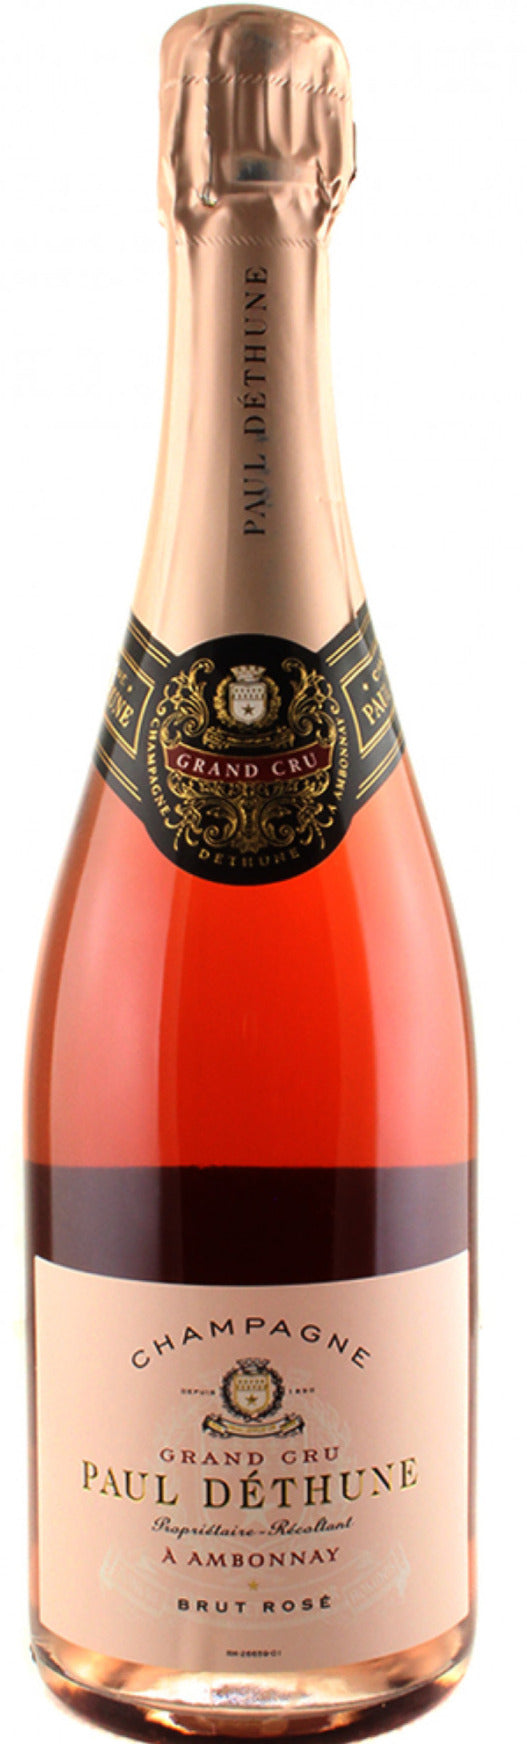 Paul Dethune Brut Rose, Grand Cru Champagne